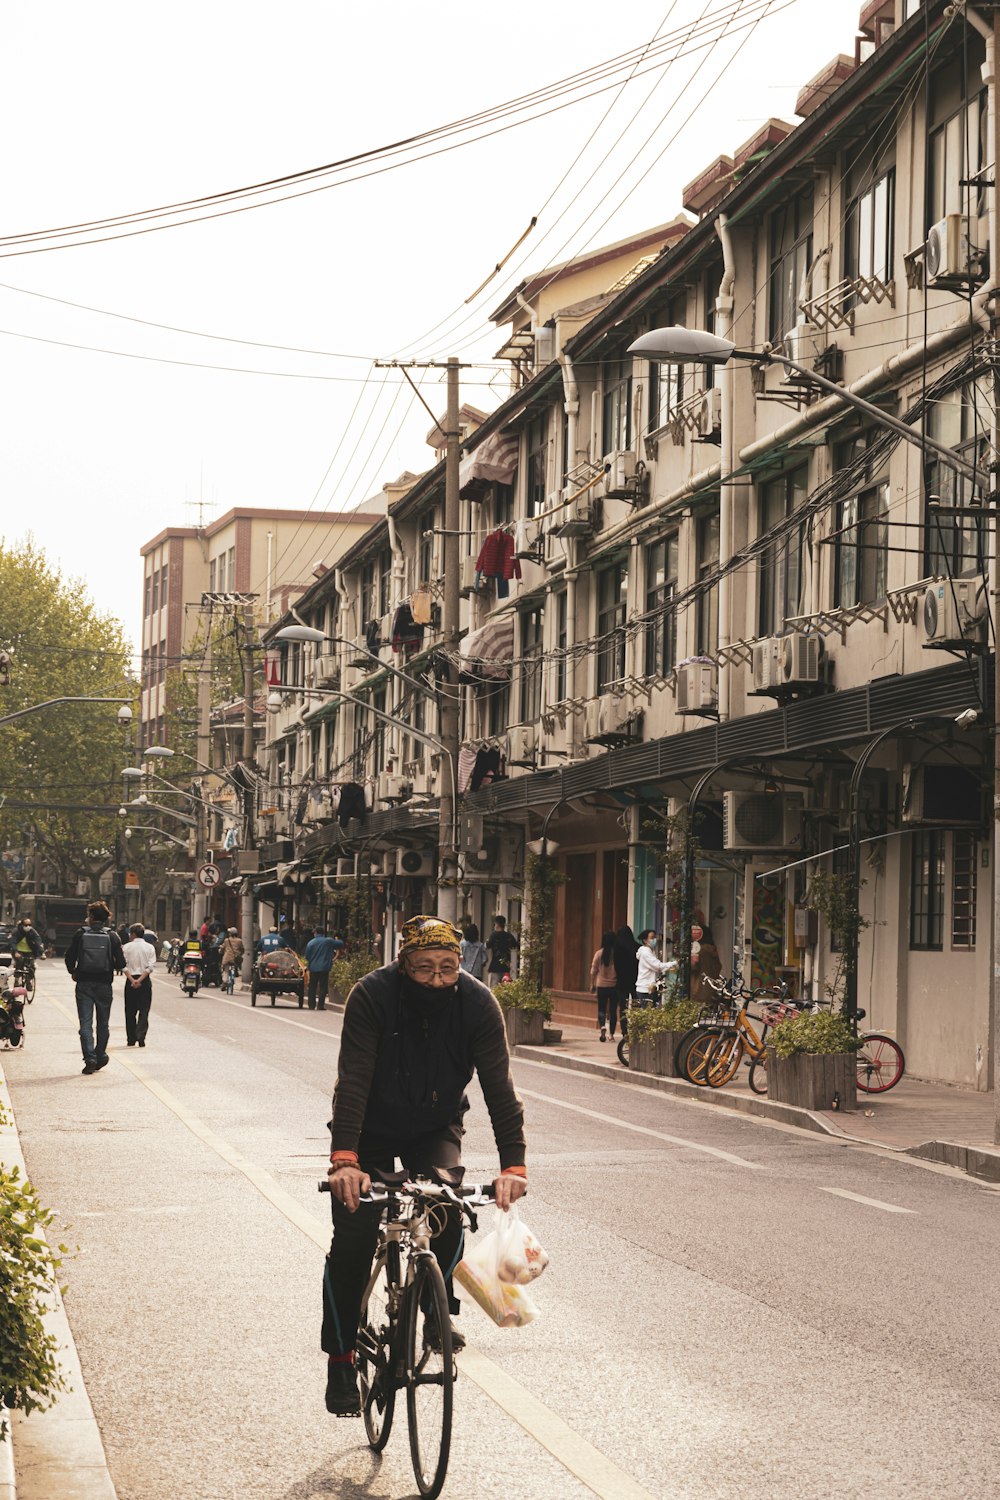 man in black jacket riding bicycle on street during daytime